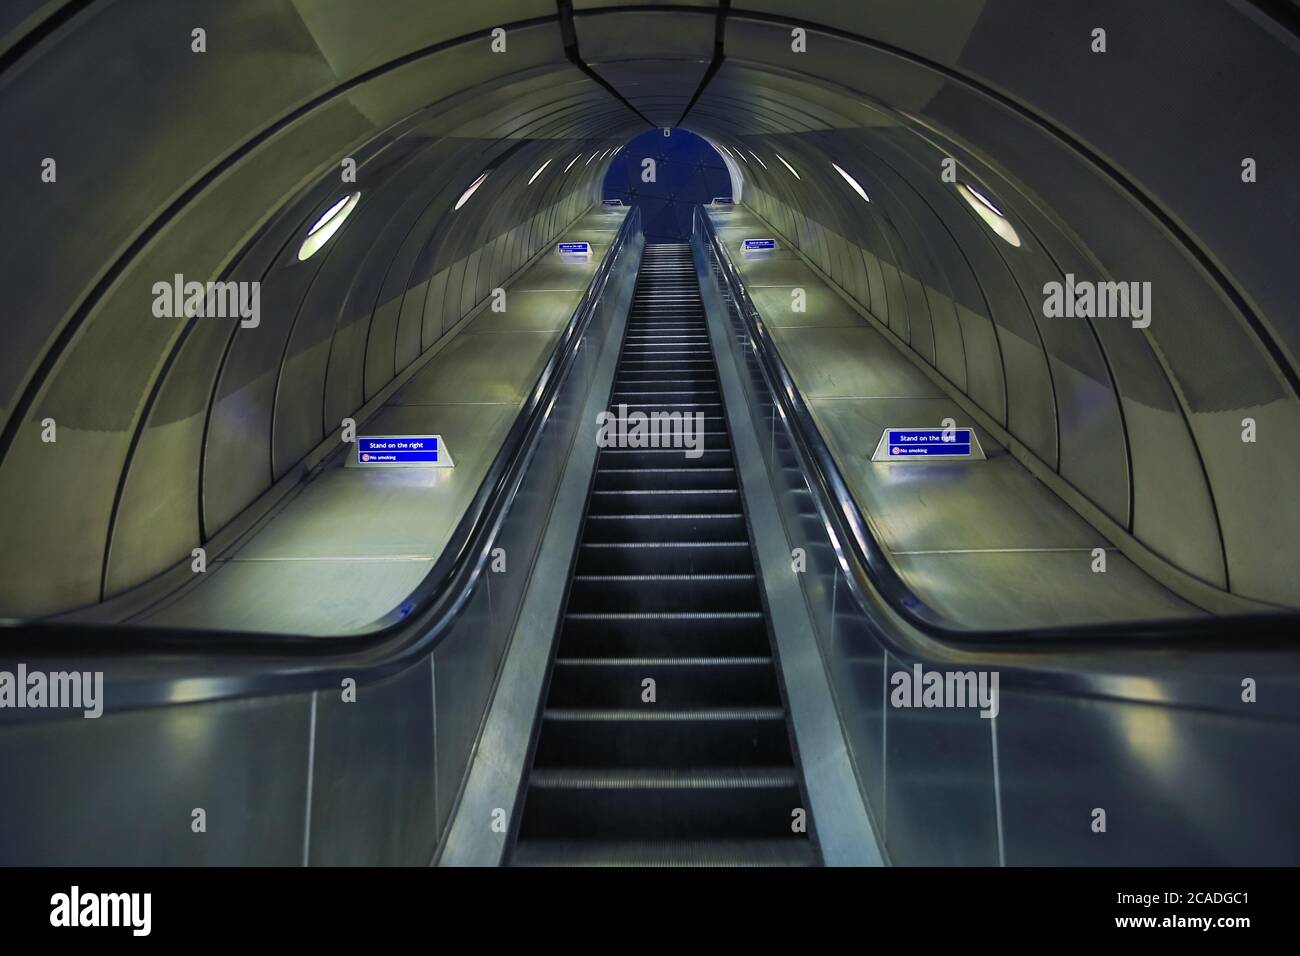 Scala mobile, stazione della metropolitana di Southwark, progettata da Sir Richard MacCormac, Londra, Inghilterra, Regno Unito Foto Stock